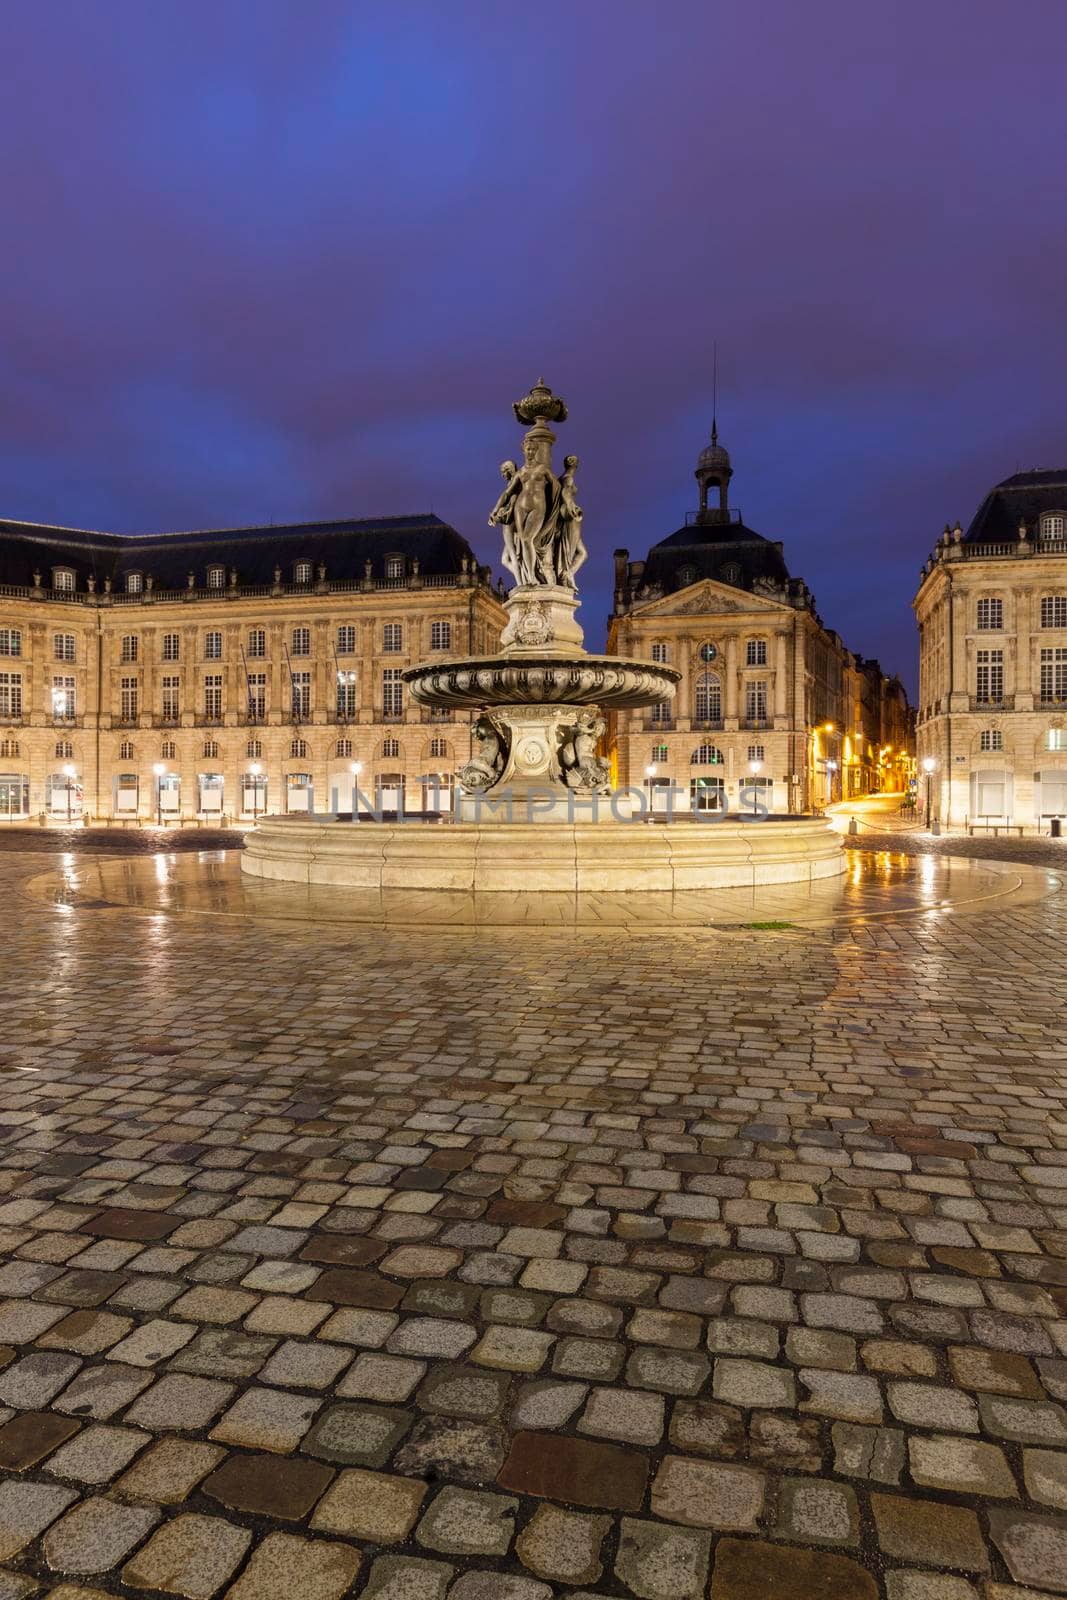 Place de la Bourse in Bordeaux by benkrut